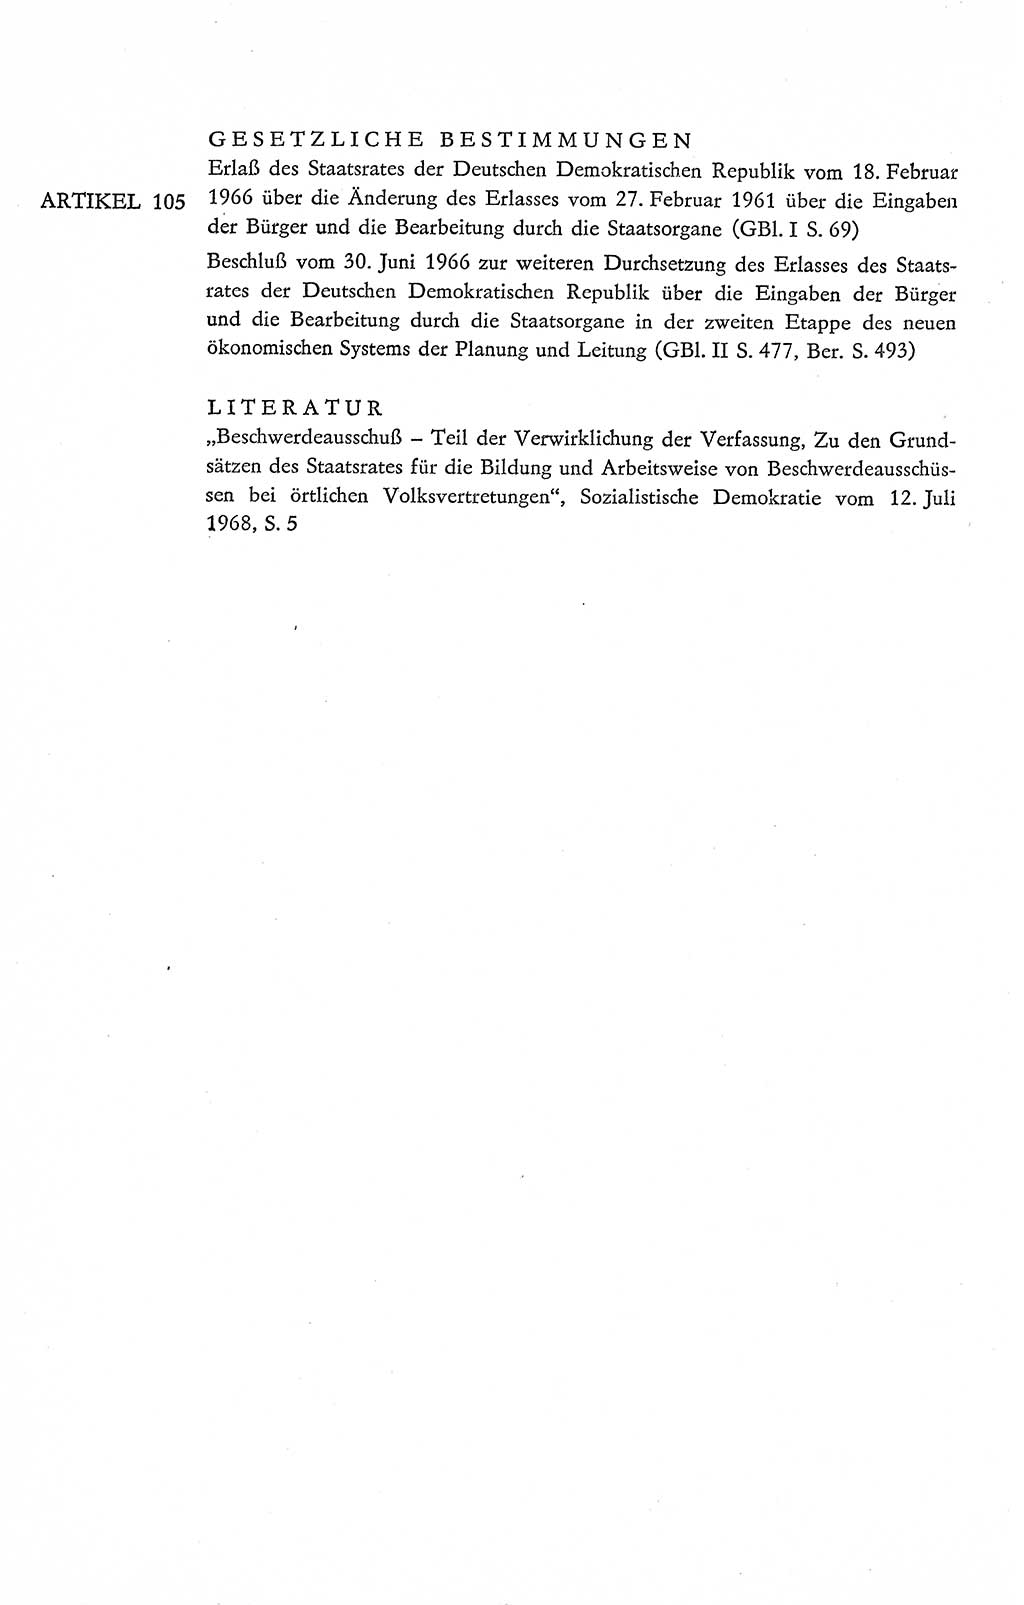 Verfassung der Deutschen Demokratischen Republik (DDR), Dokumente, Kommentar 1969, Band 2, Seite 504 (Verf. DDR Dok. Komm. 1969, Bd. 2, S. 504)